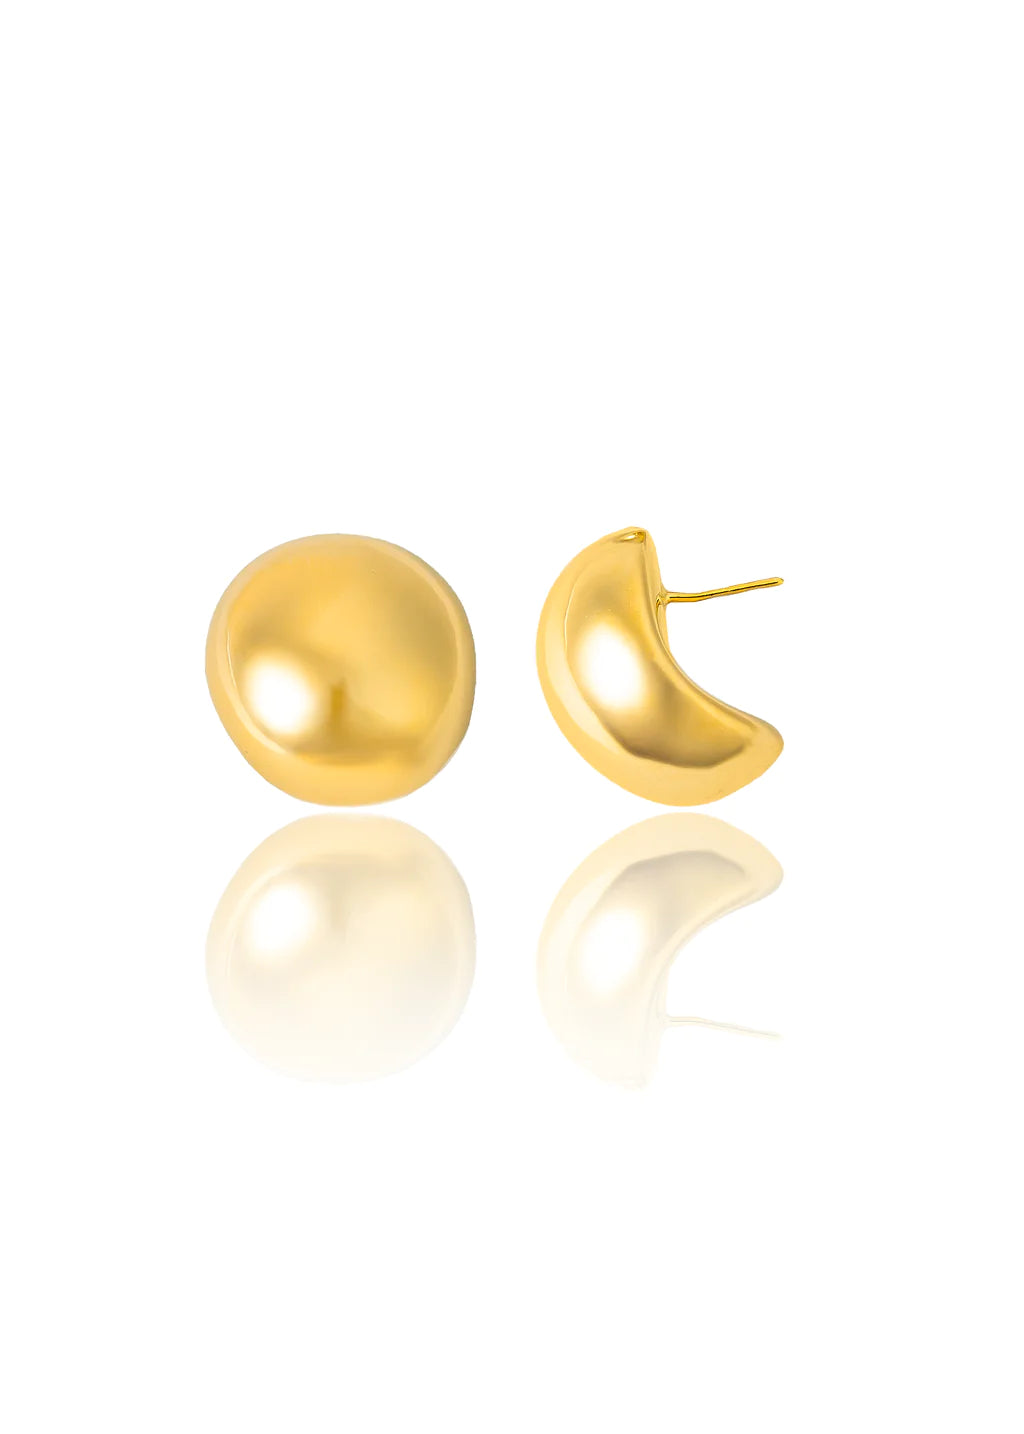 XL Luna Piena Ball Earrings In 18K Yellow Gold